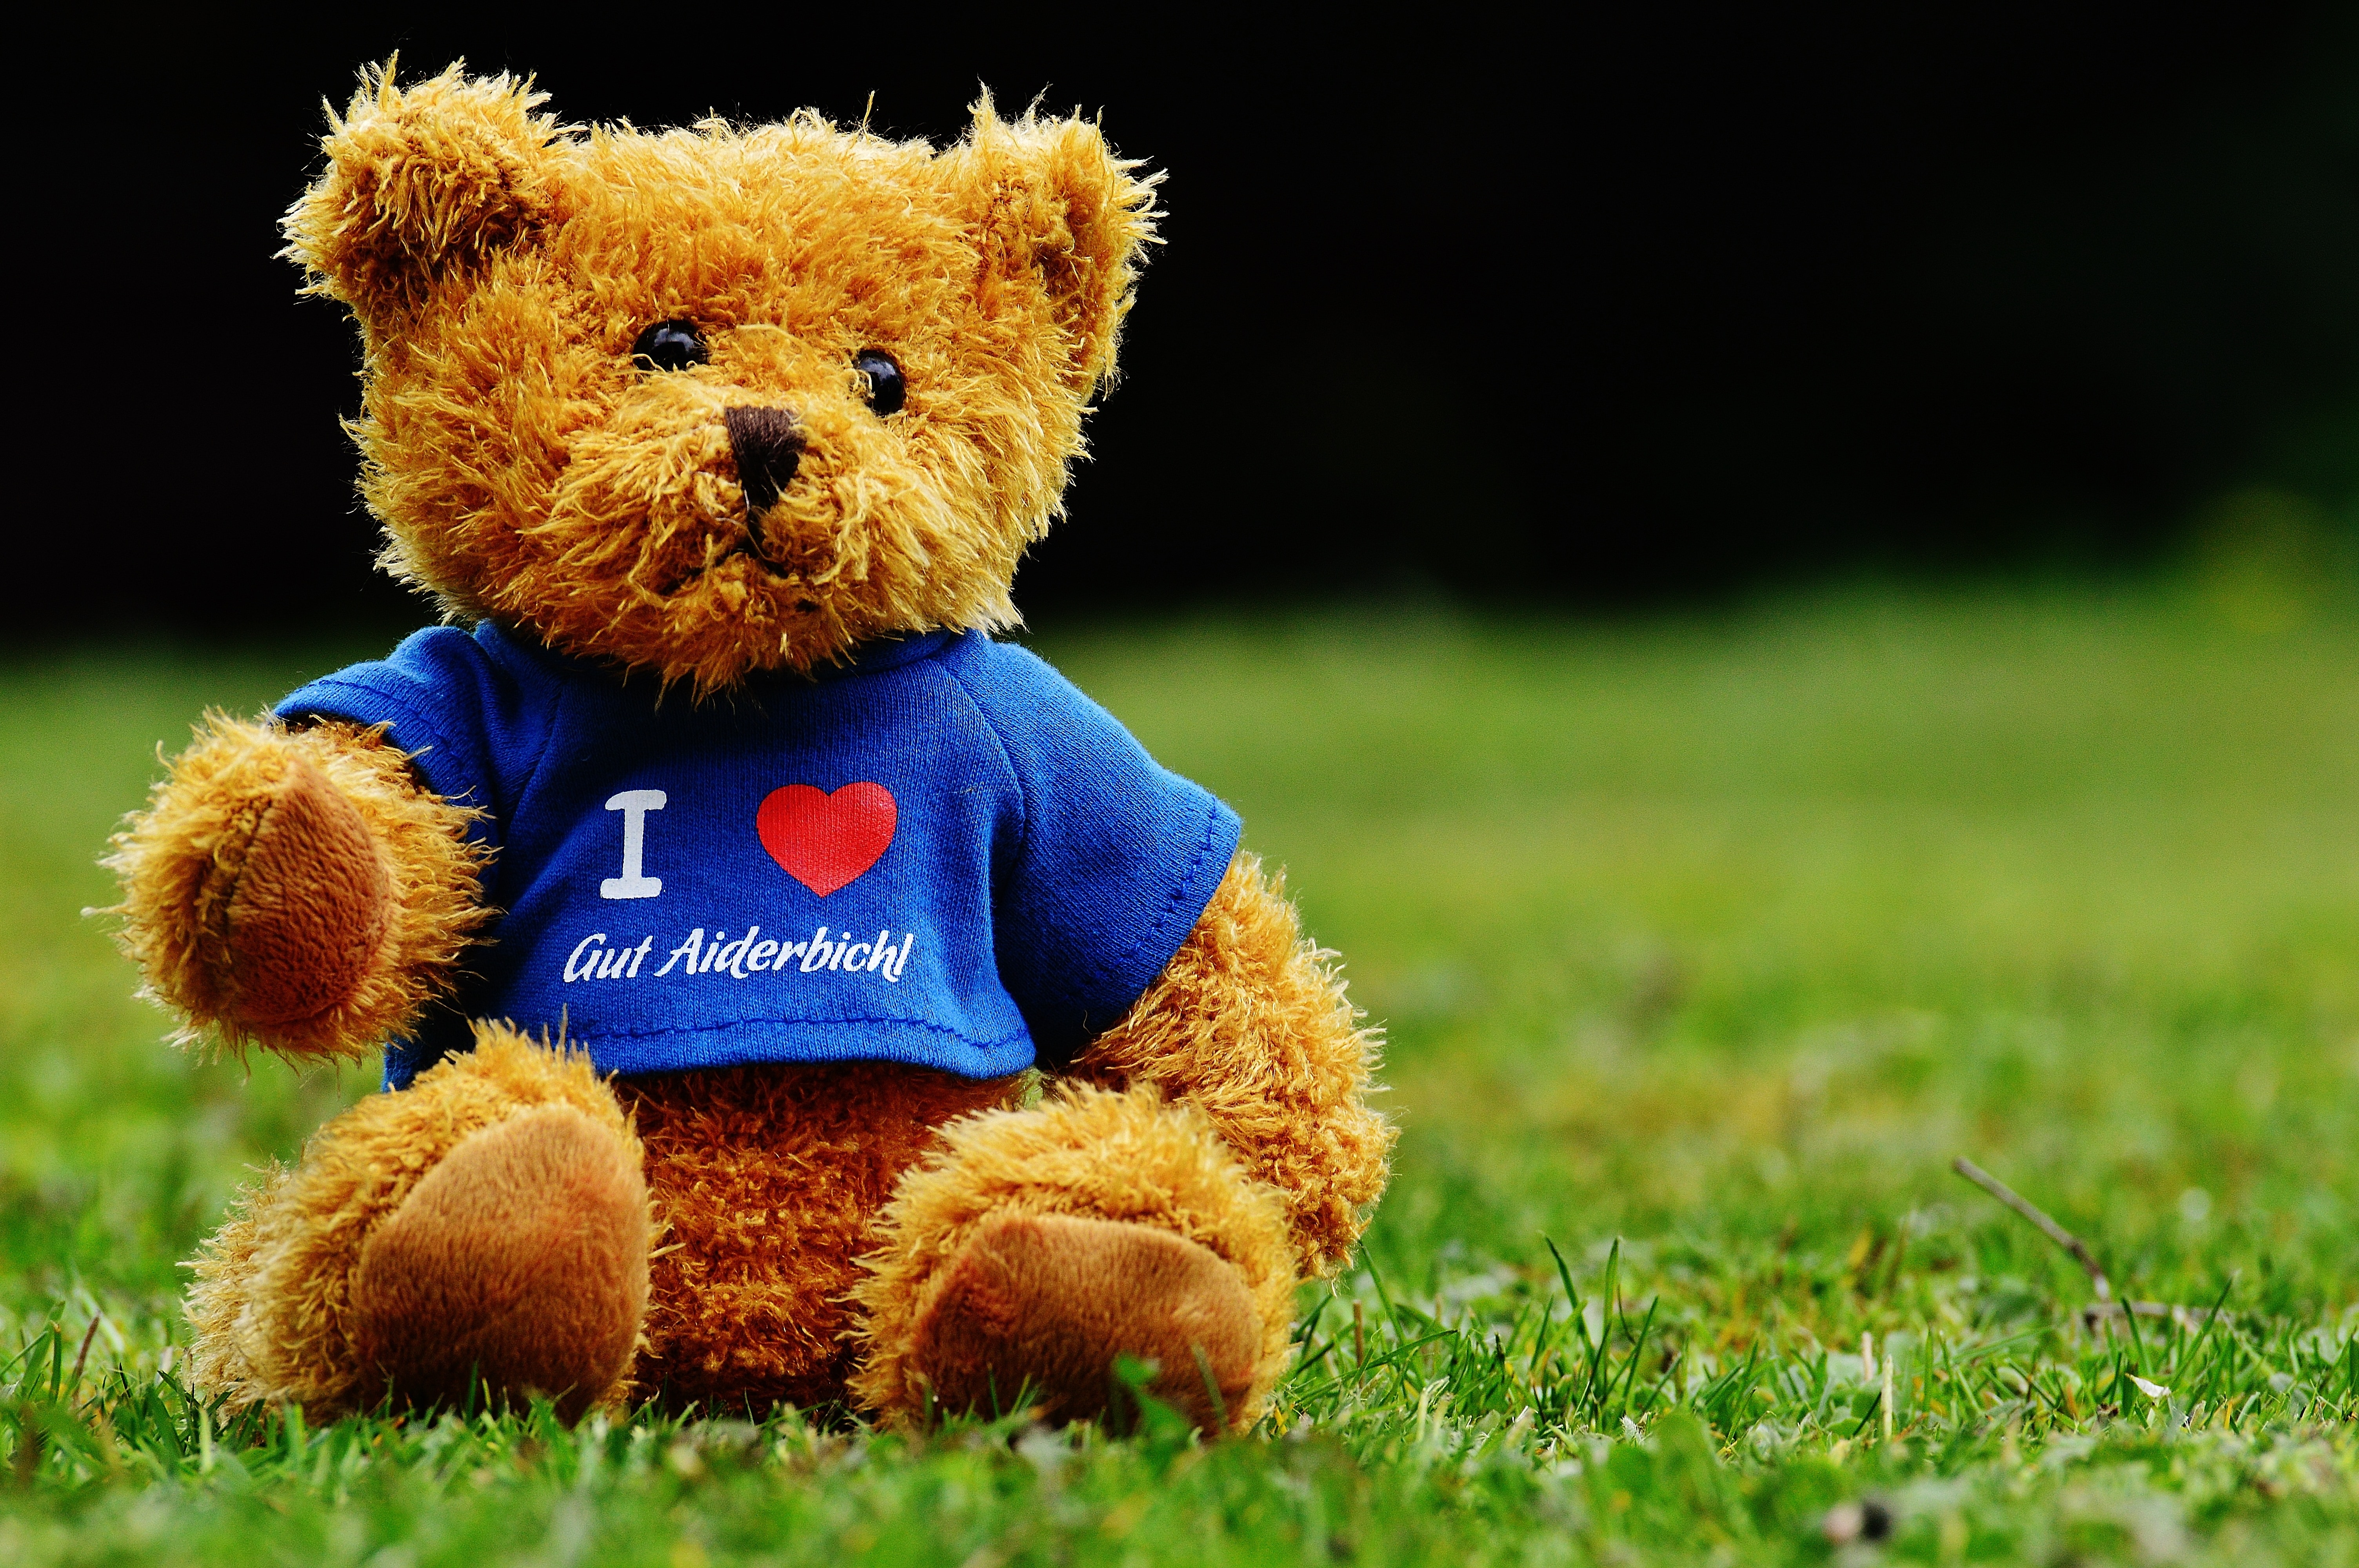 Teddy, Good Aiderbichl, Sanctuary, teddy bear, toy